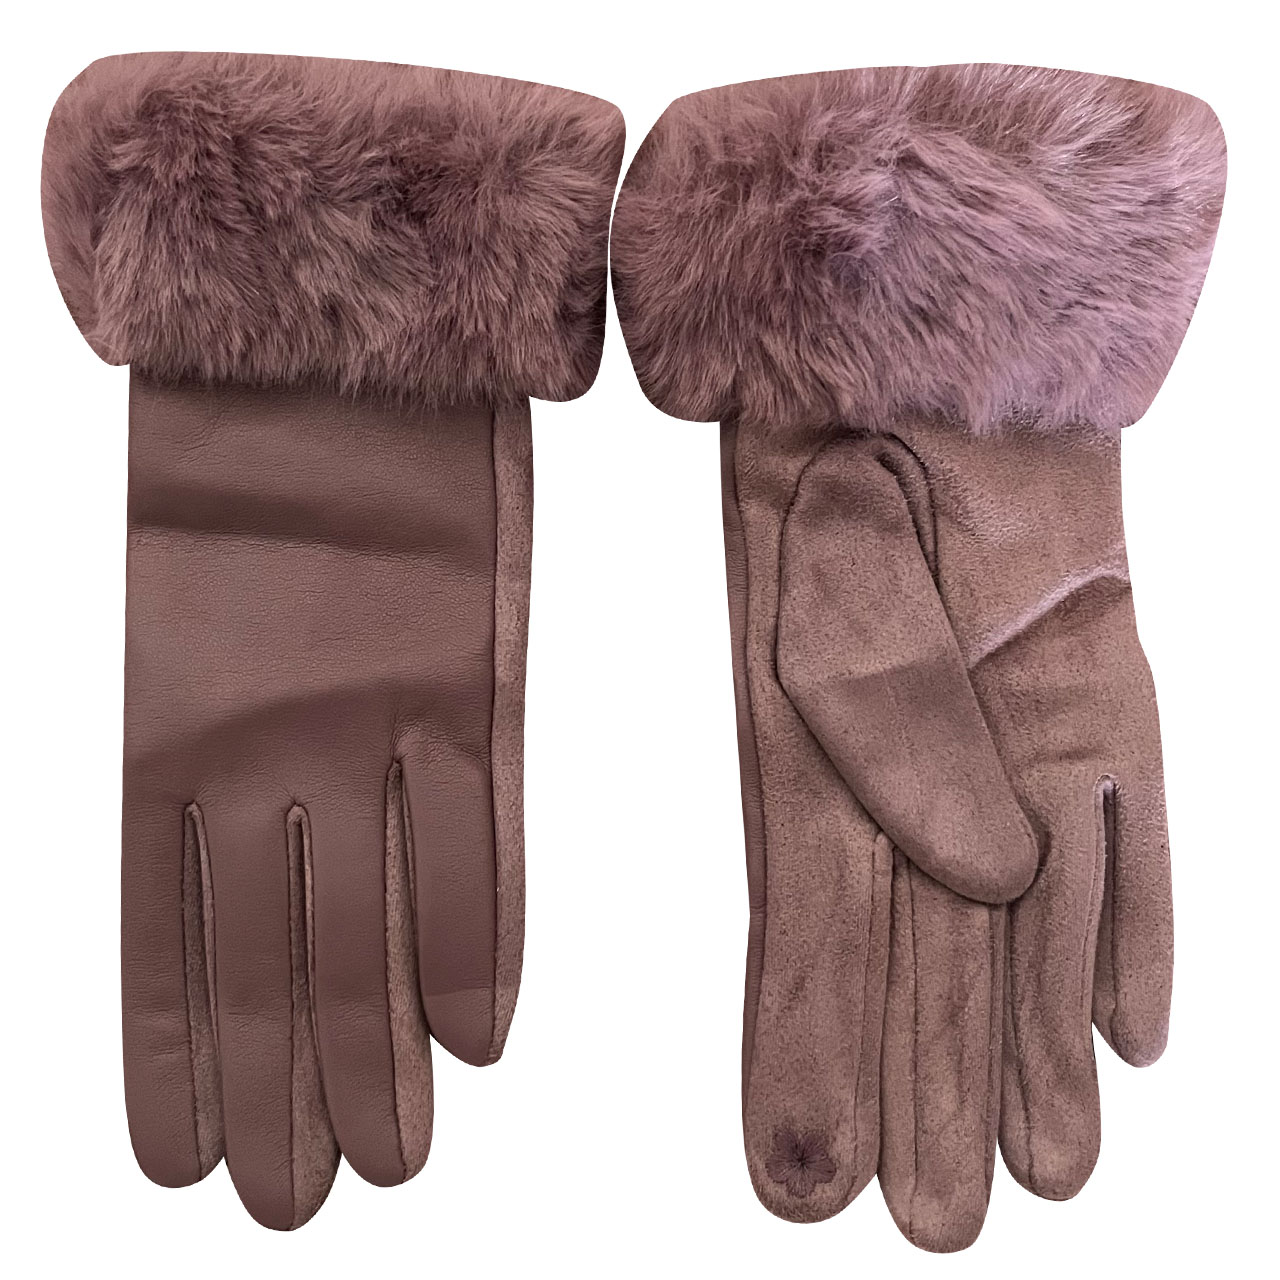 دستکش زنانه مدل زمستانی کد 102